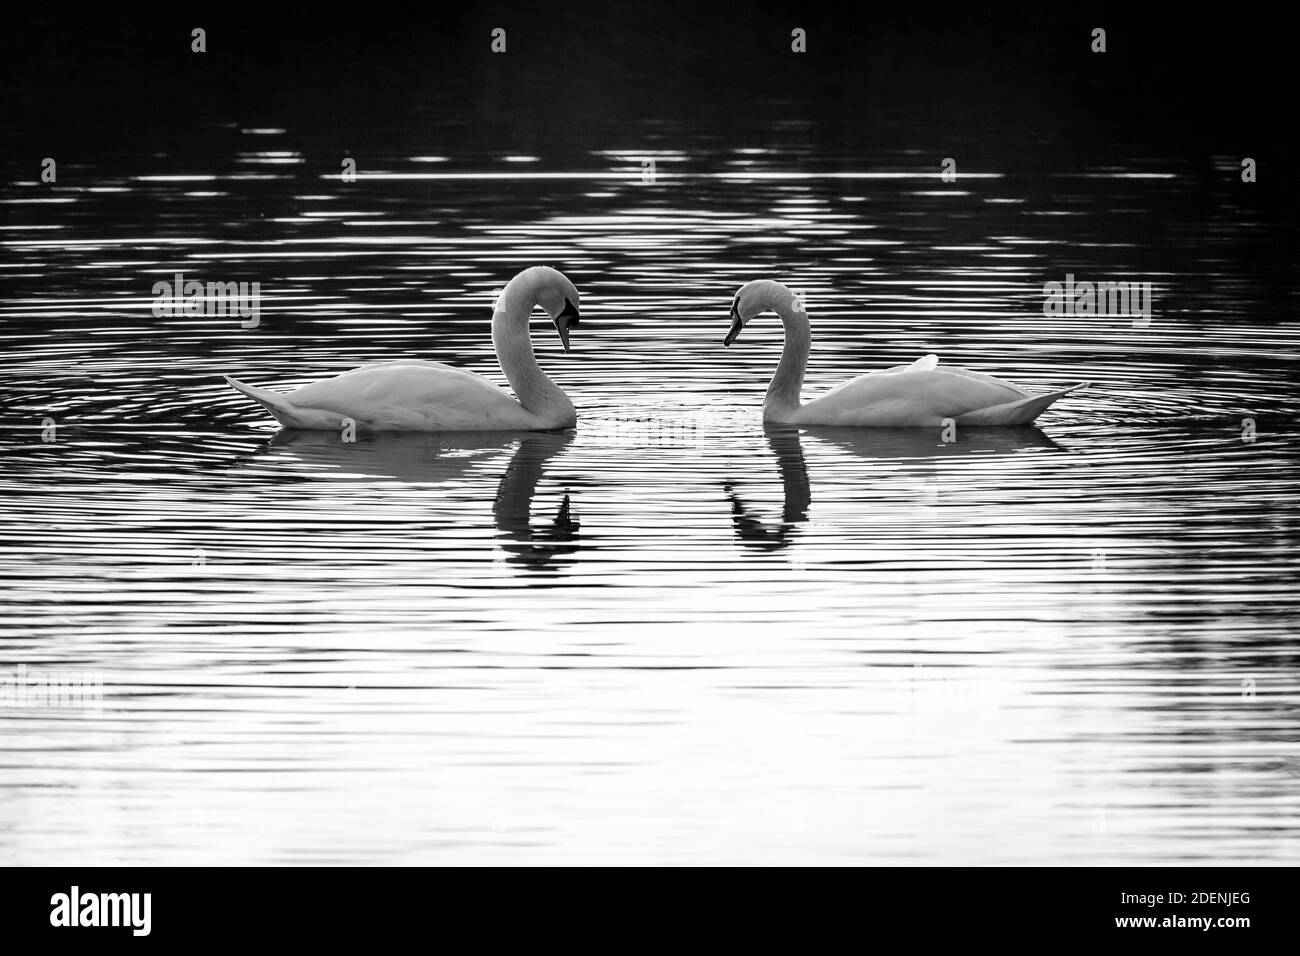 Schwarz-Weiß-Bild eines Paares stummer Schwäne, die in einem See schwimmen. Spiegelung der Vögel im Wasser. Stockfoto